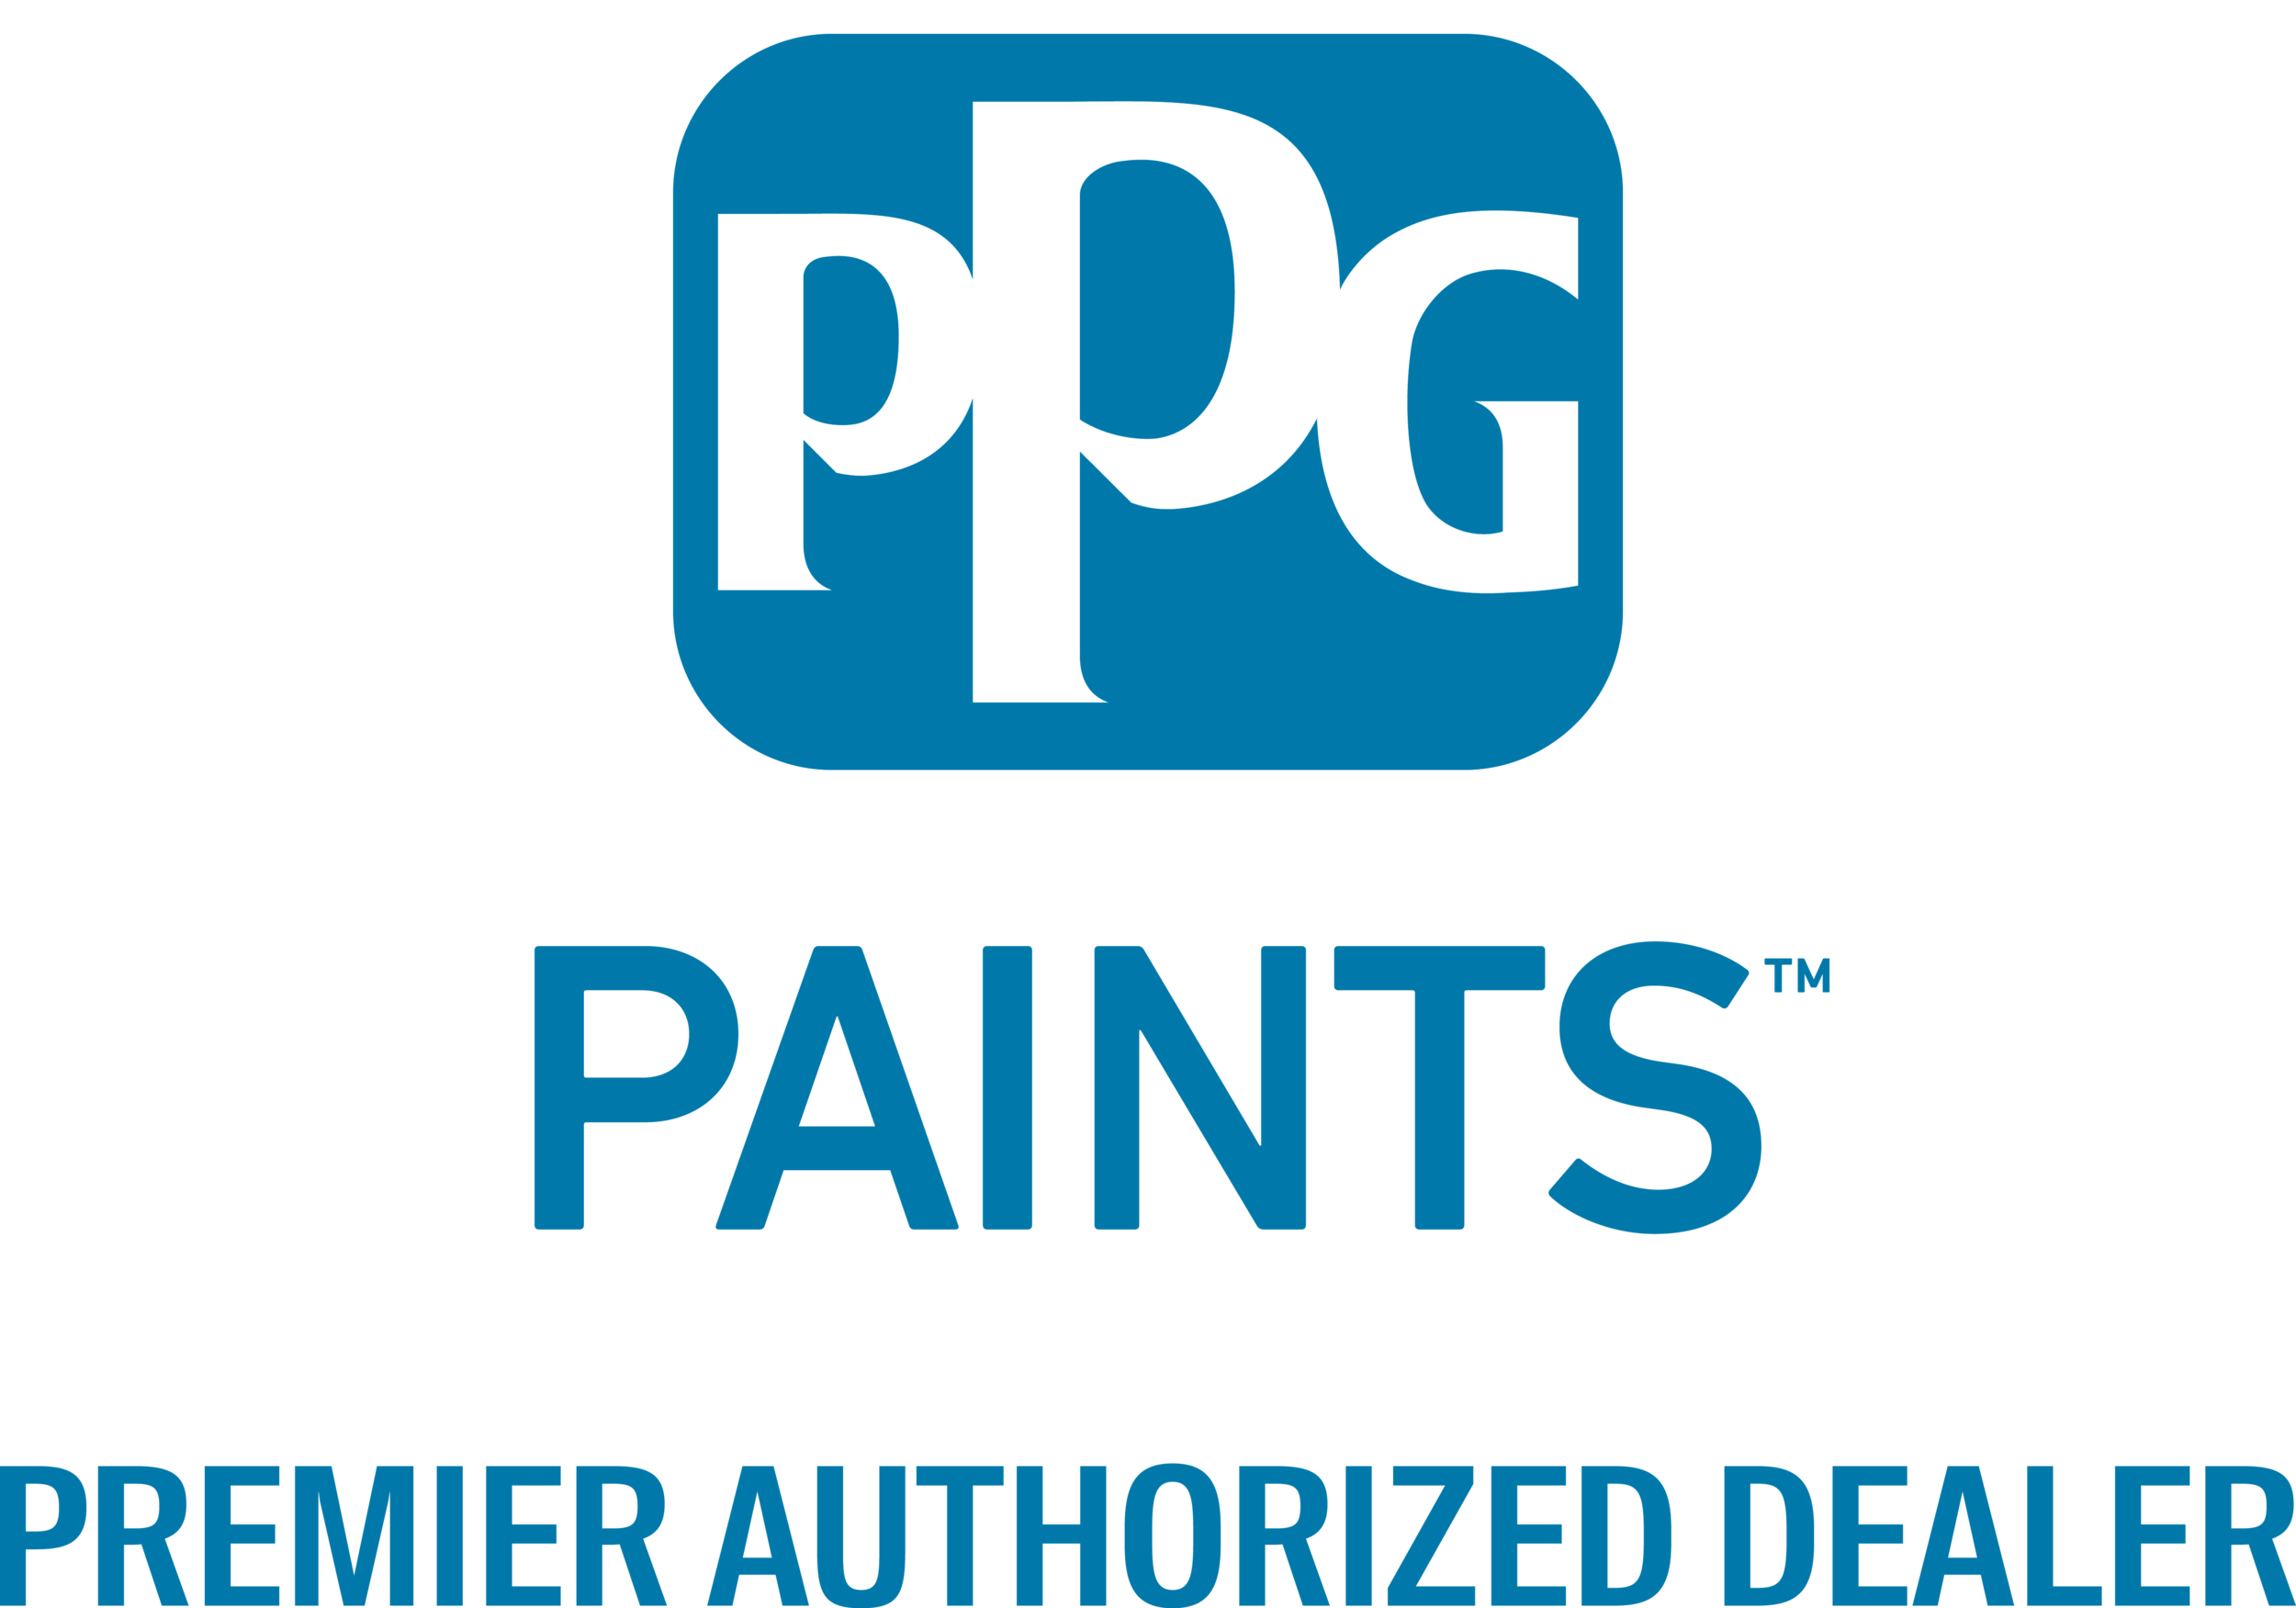 PPG_Paints_Premier_Auth_Dealer_POS_VERT.png